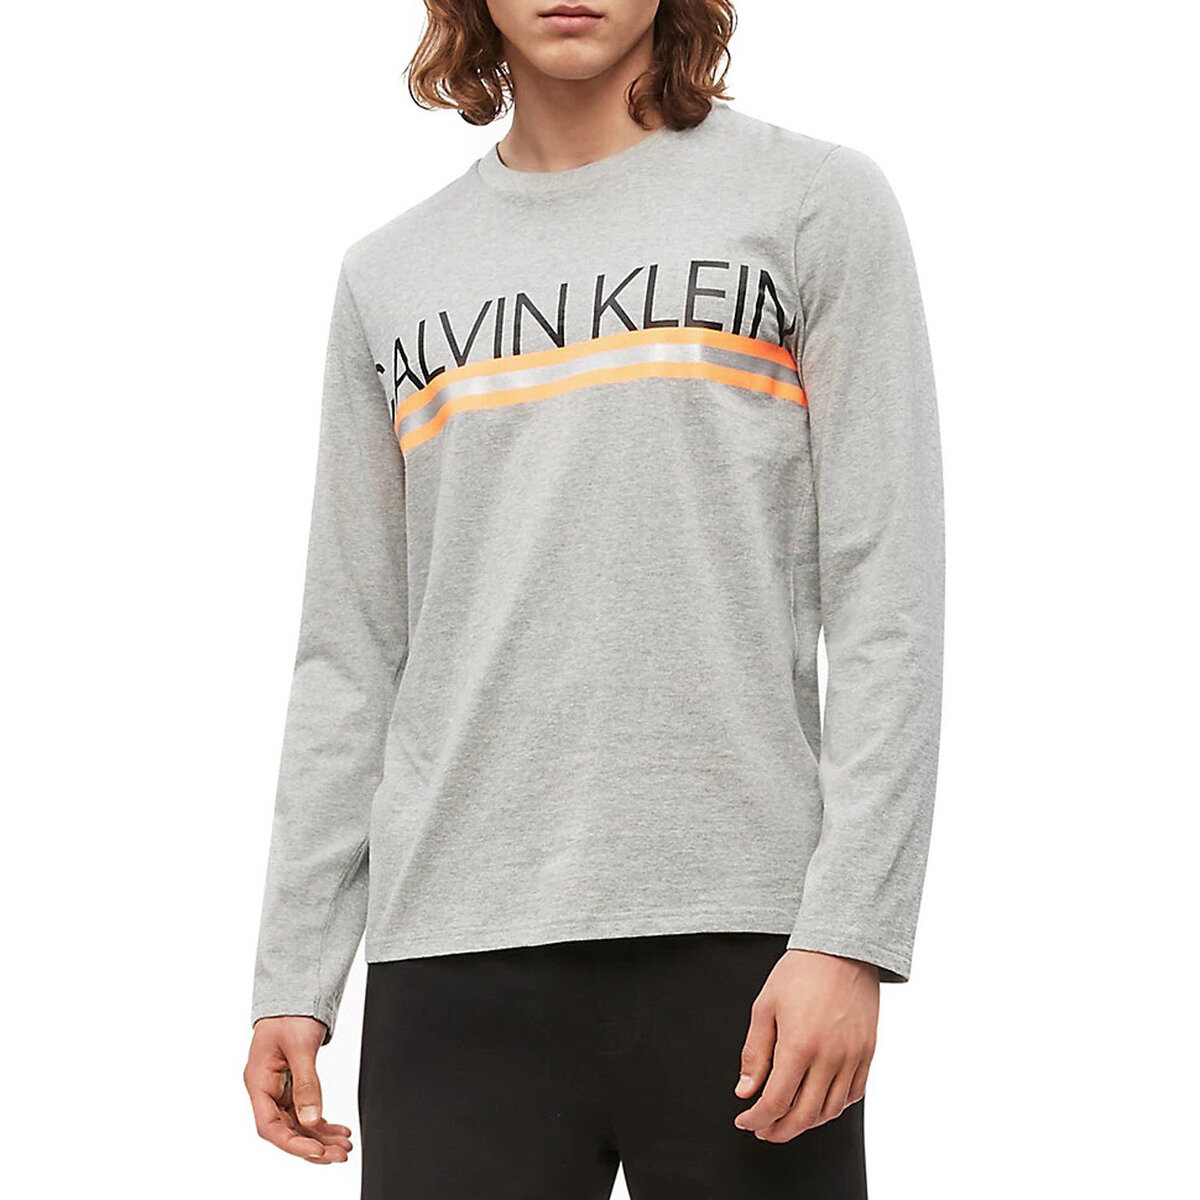 Pánské tričko L02852 šedá - Calvin Klein, šedá L i10_P38538_1:1170_2:90_